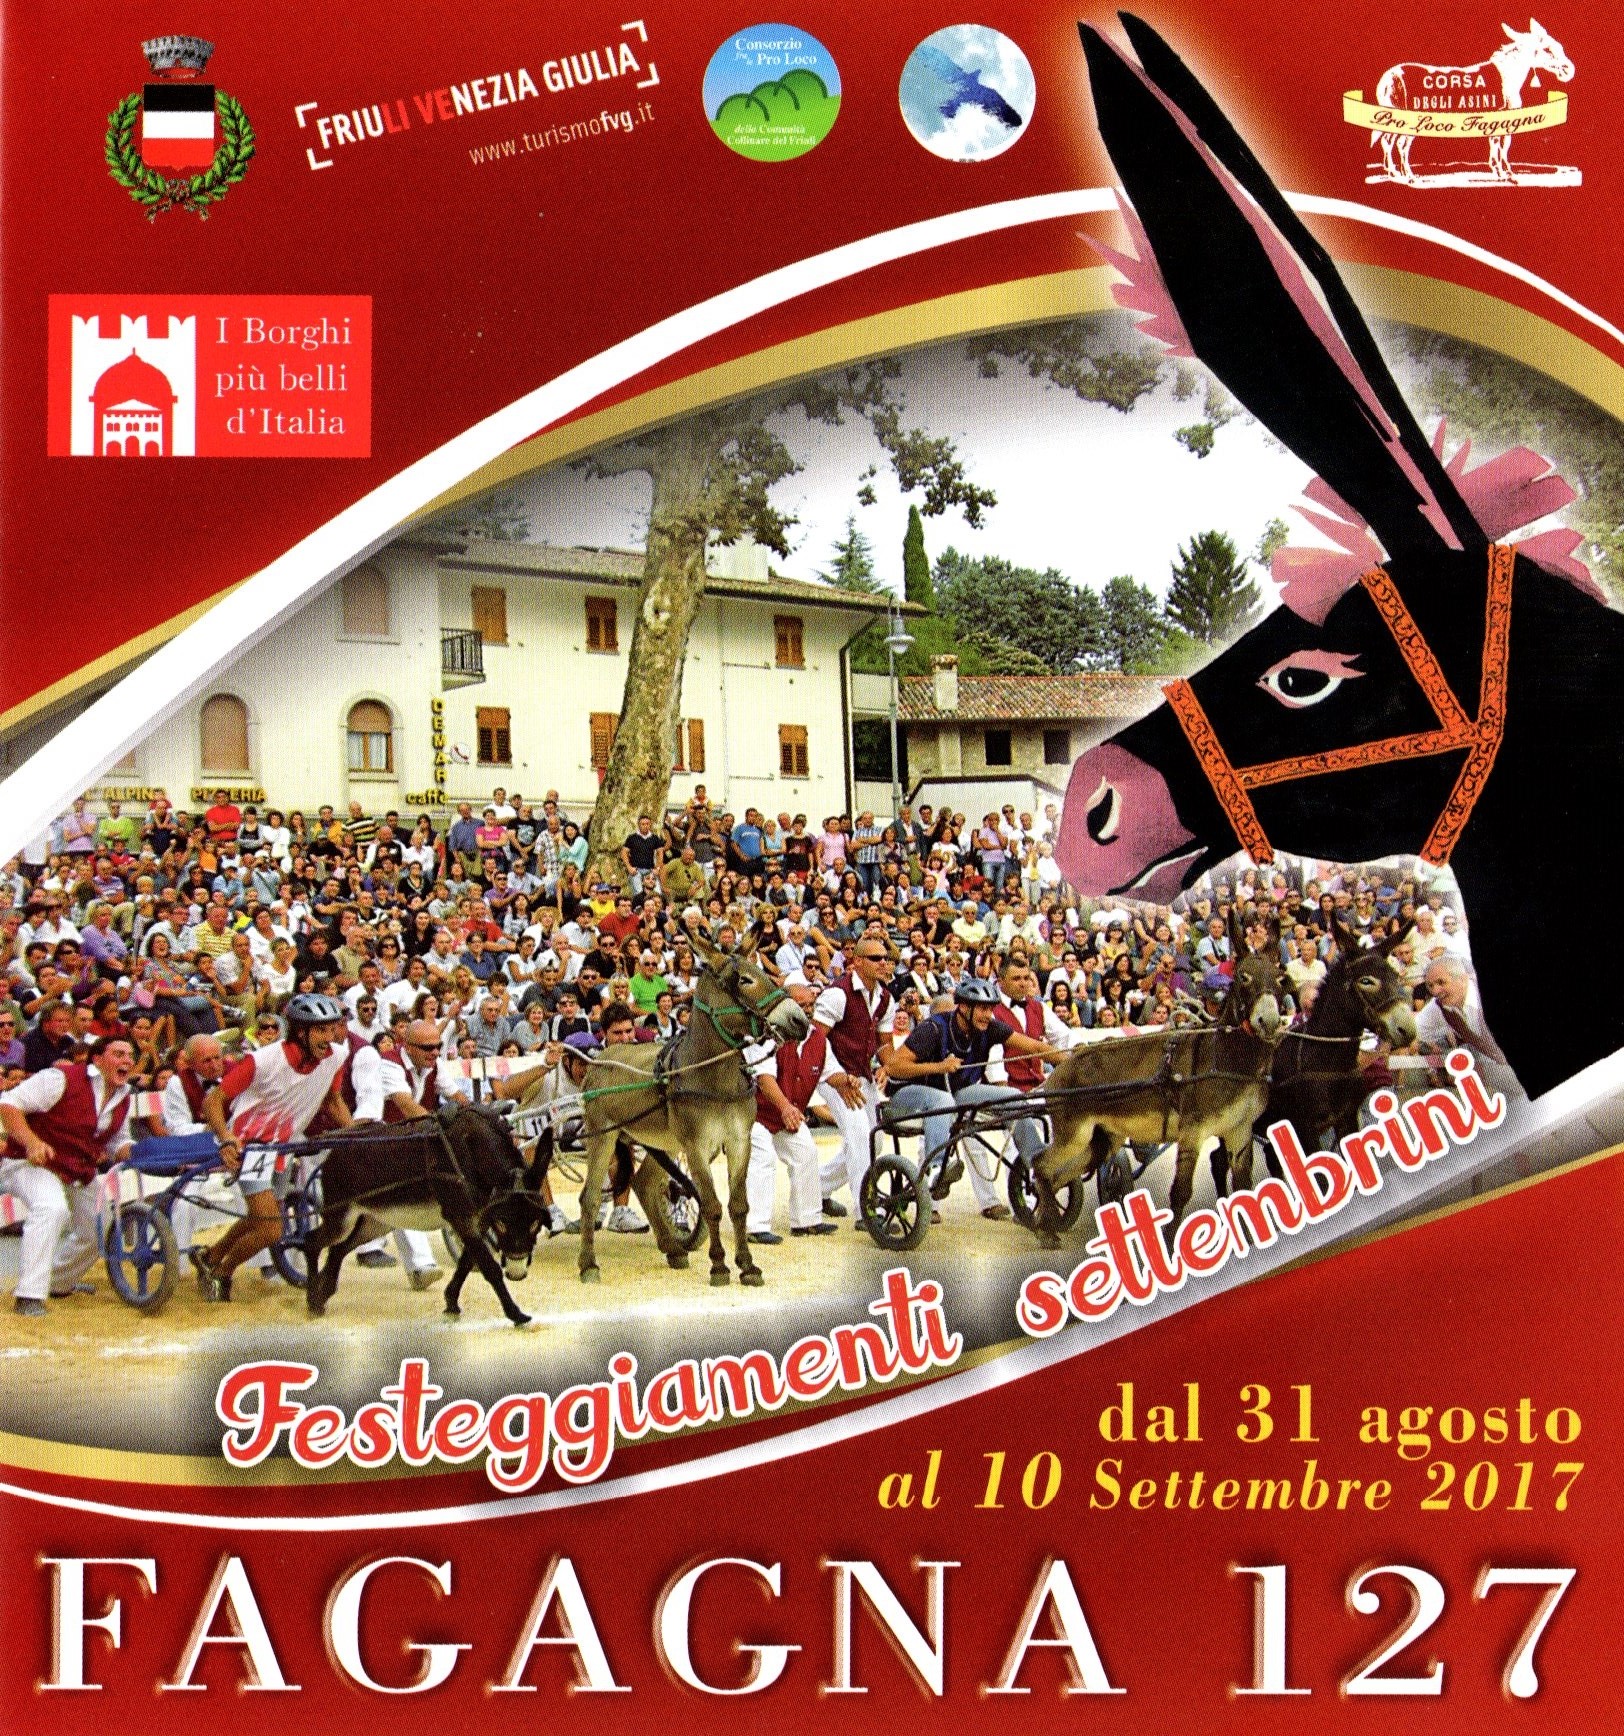 Festeggiamenti Settembrini - Sagra Fagagna 2017 - 127 edizione